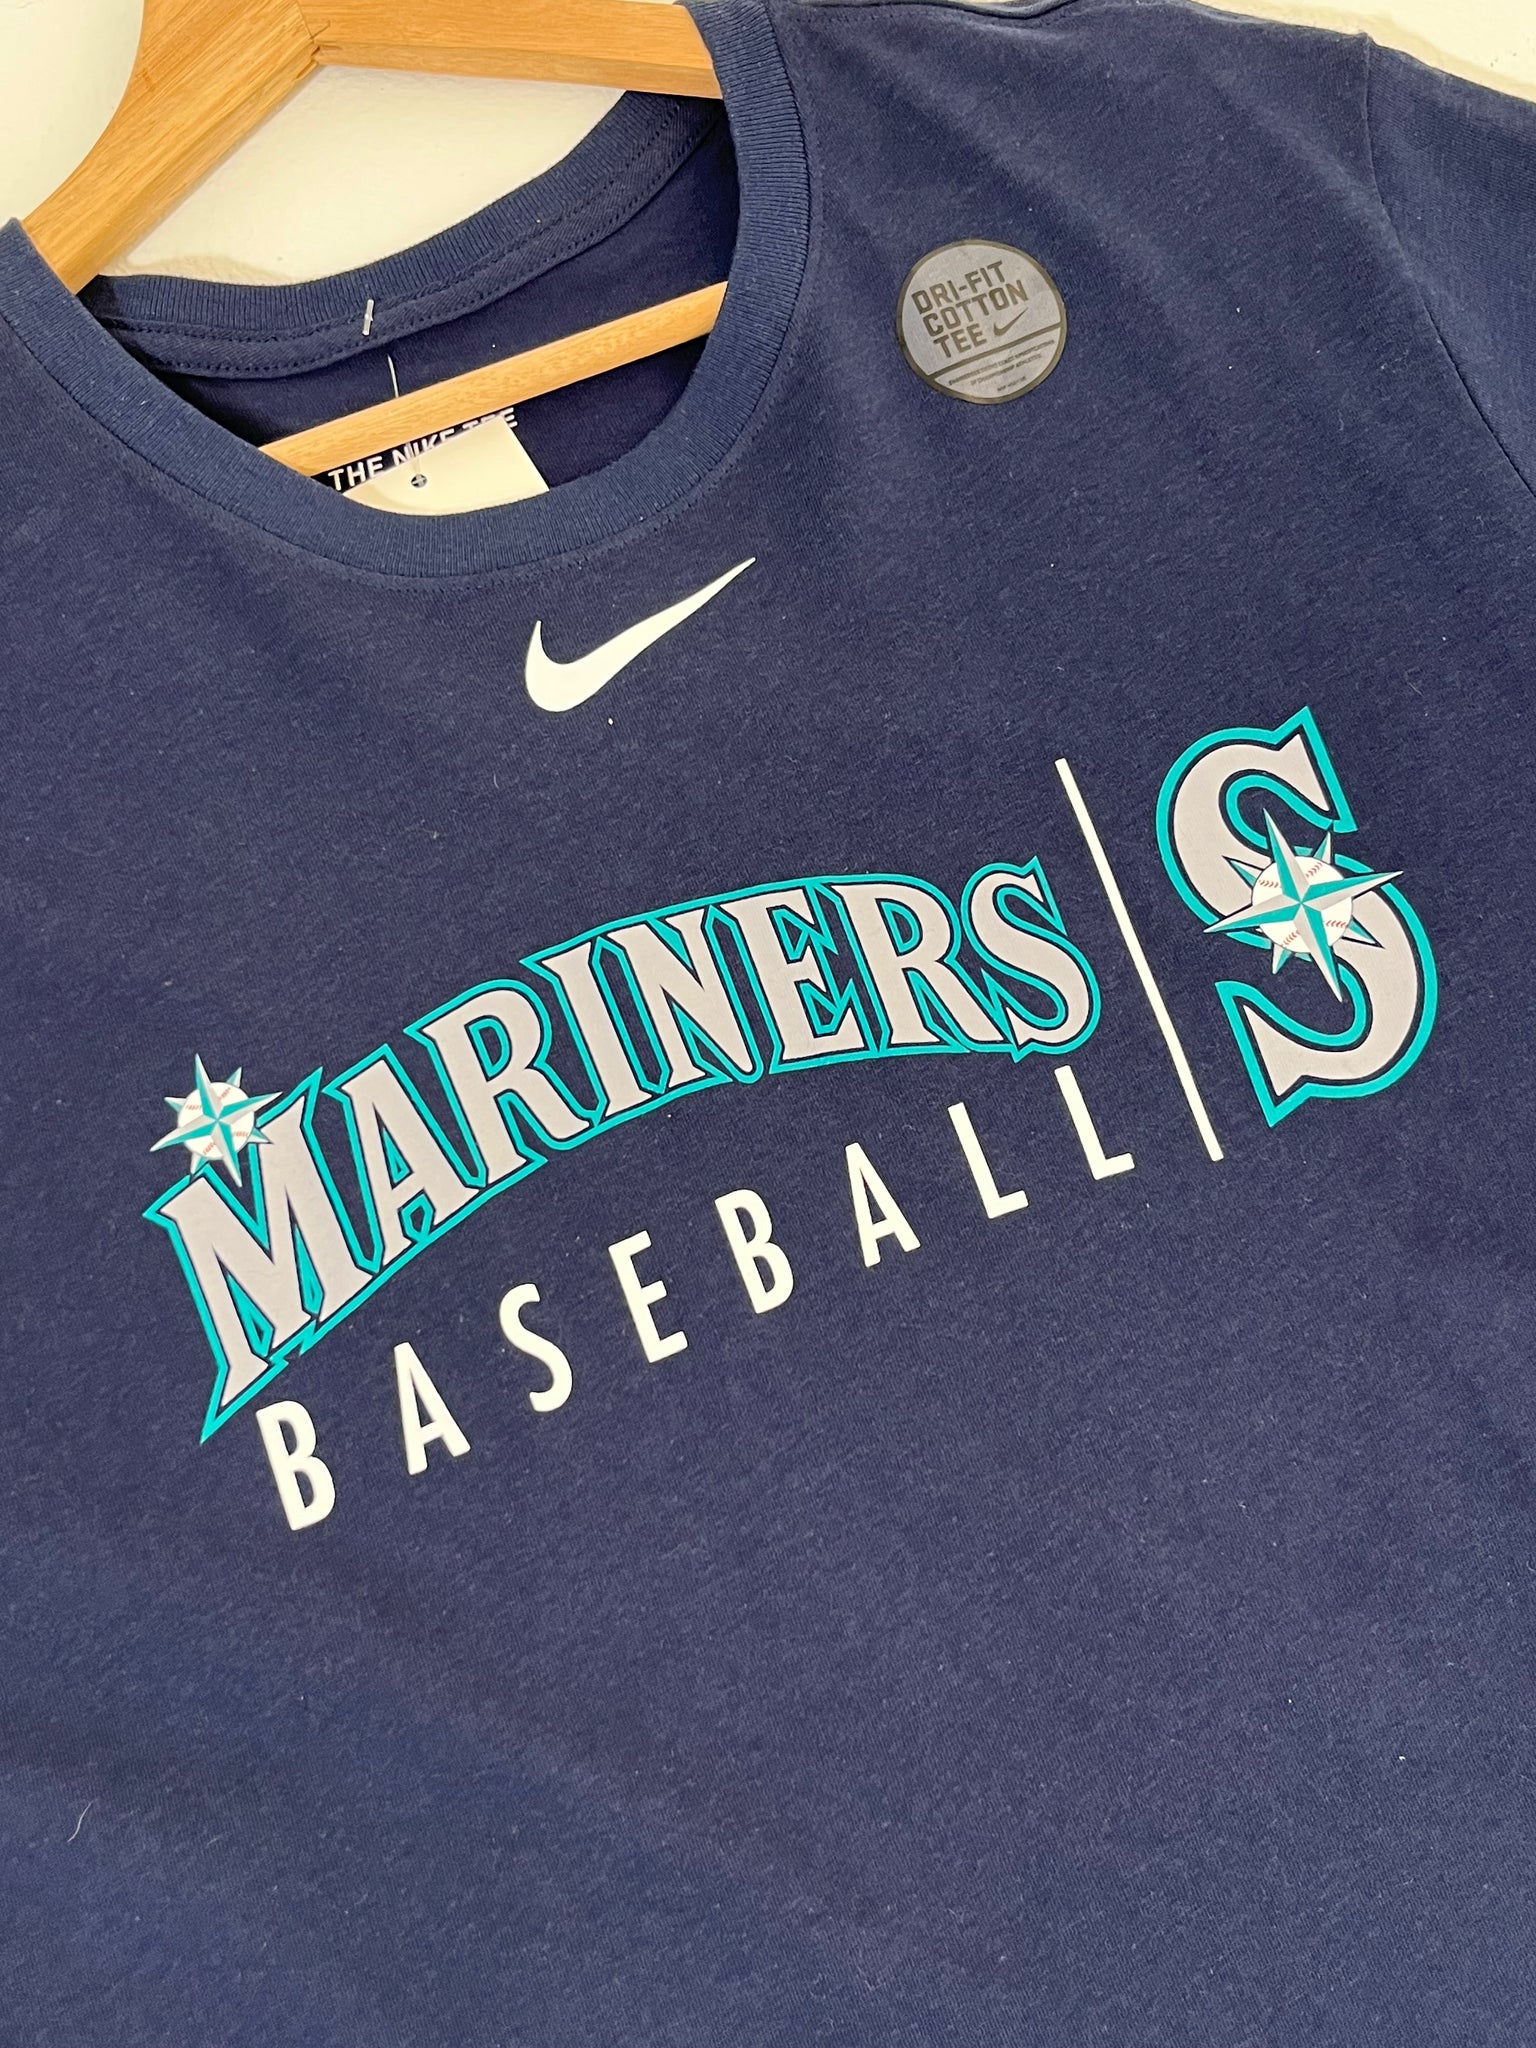 Seattle Mariners dri fit Button Up Baseball Jersey